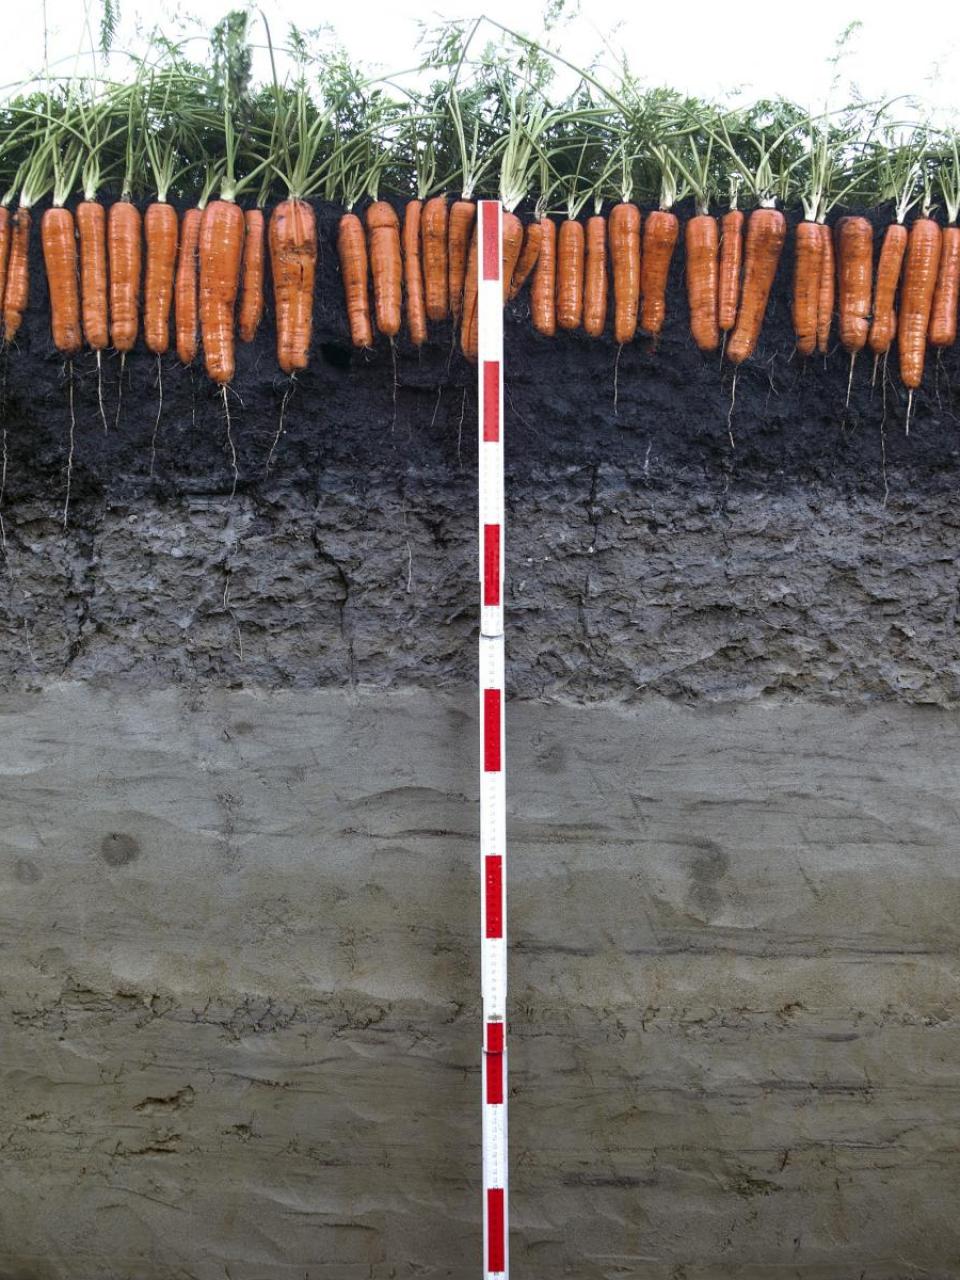 Boden ist die Grundlage für 90% unserer Nahrungsmittel. © Agroscope, Gabriela Brändle